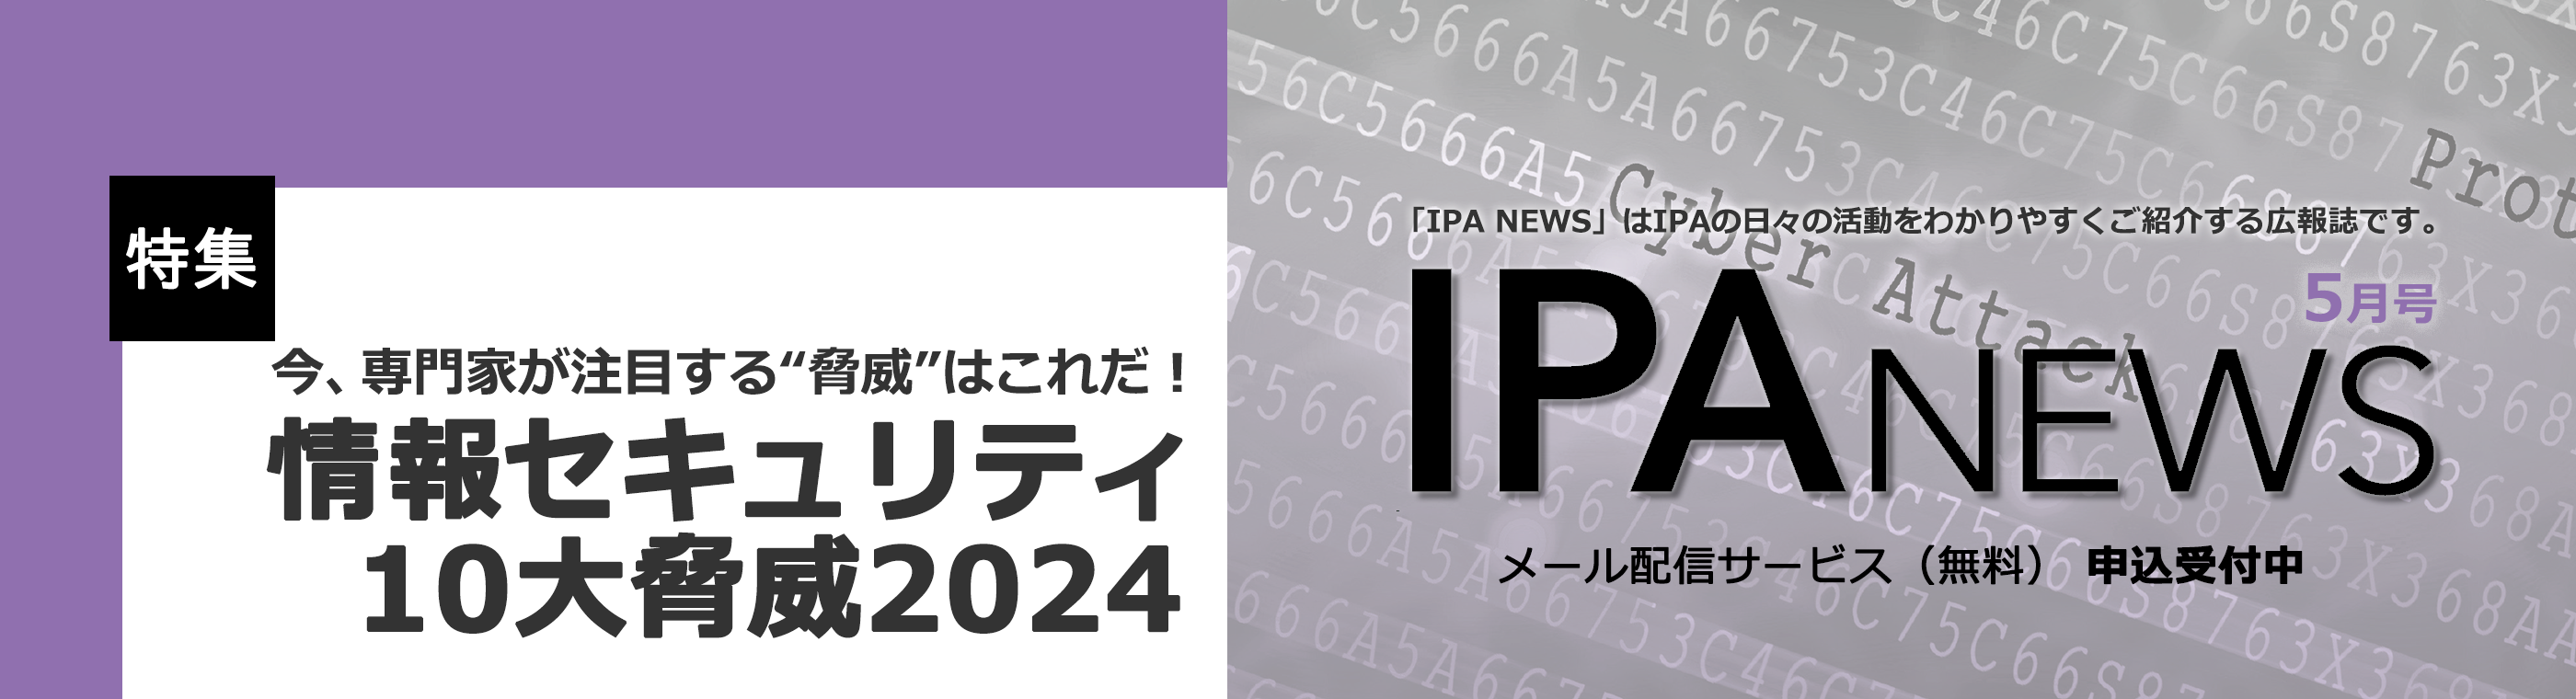 IPA NEWS 最新号